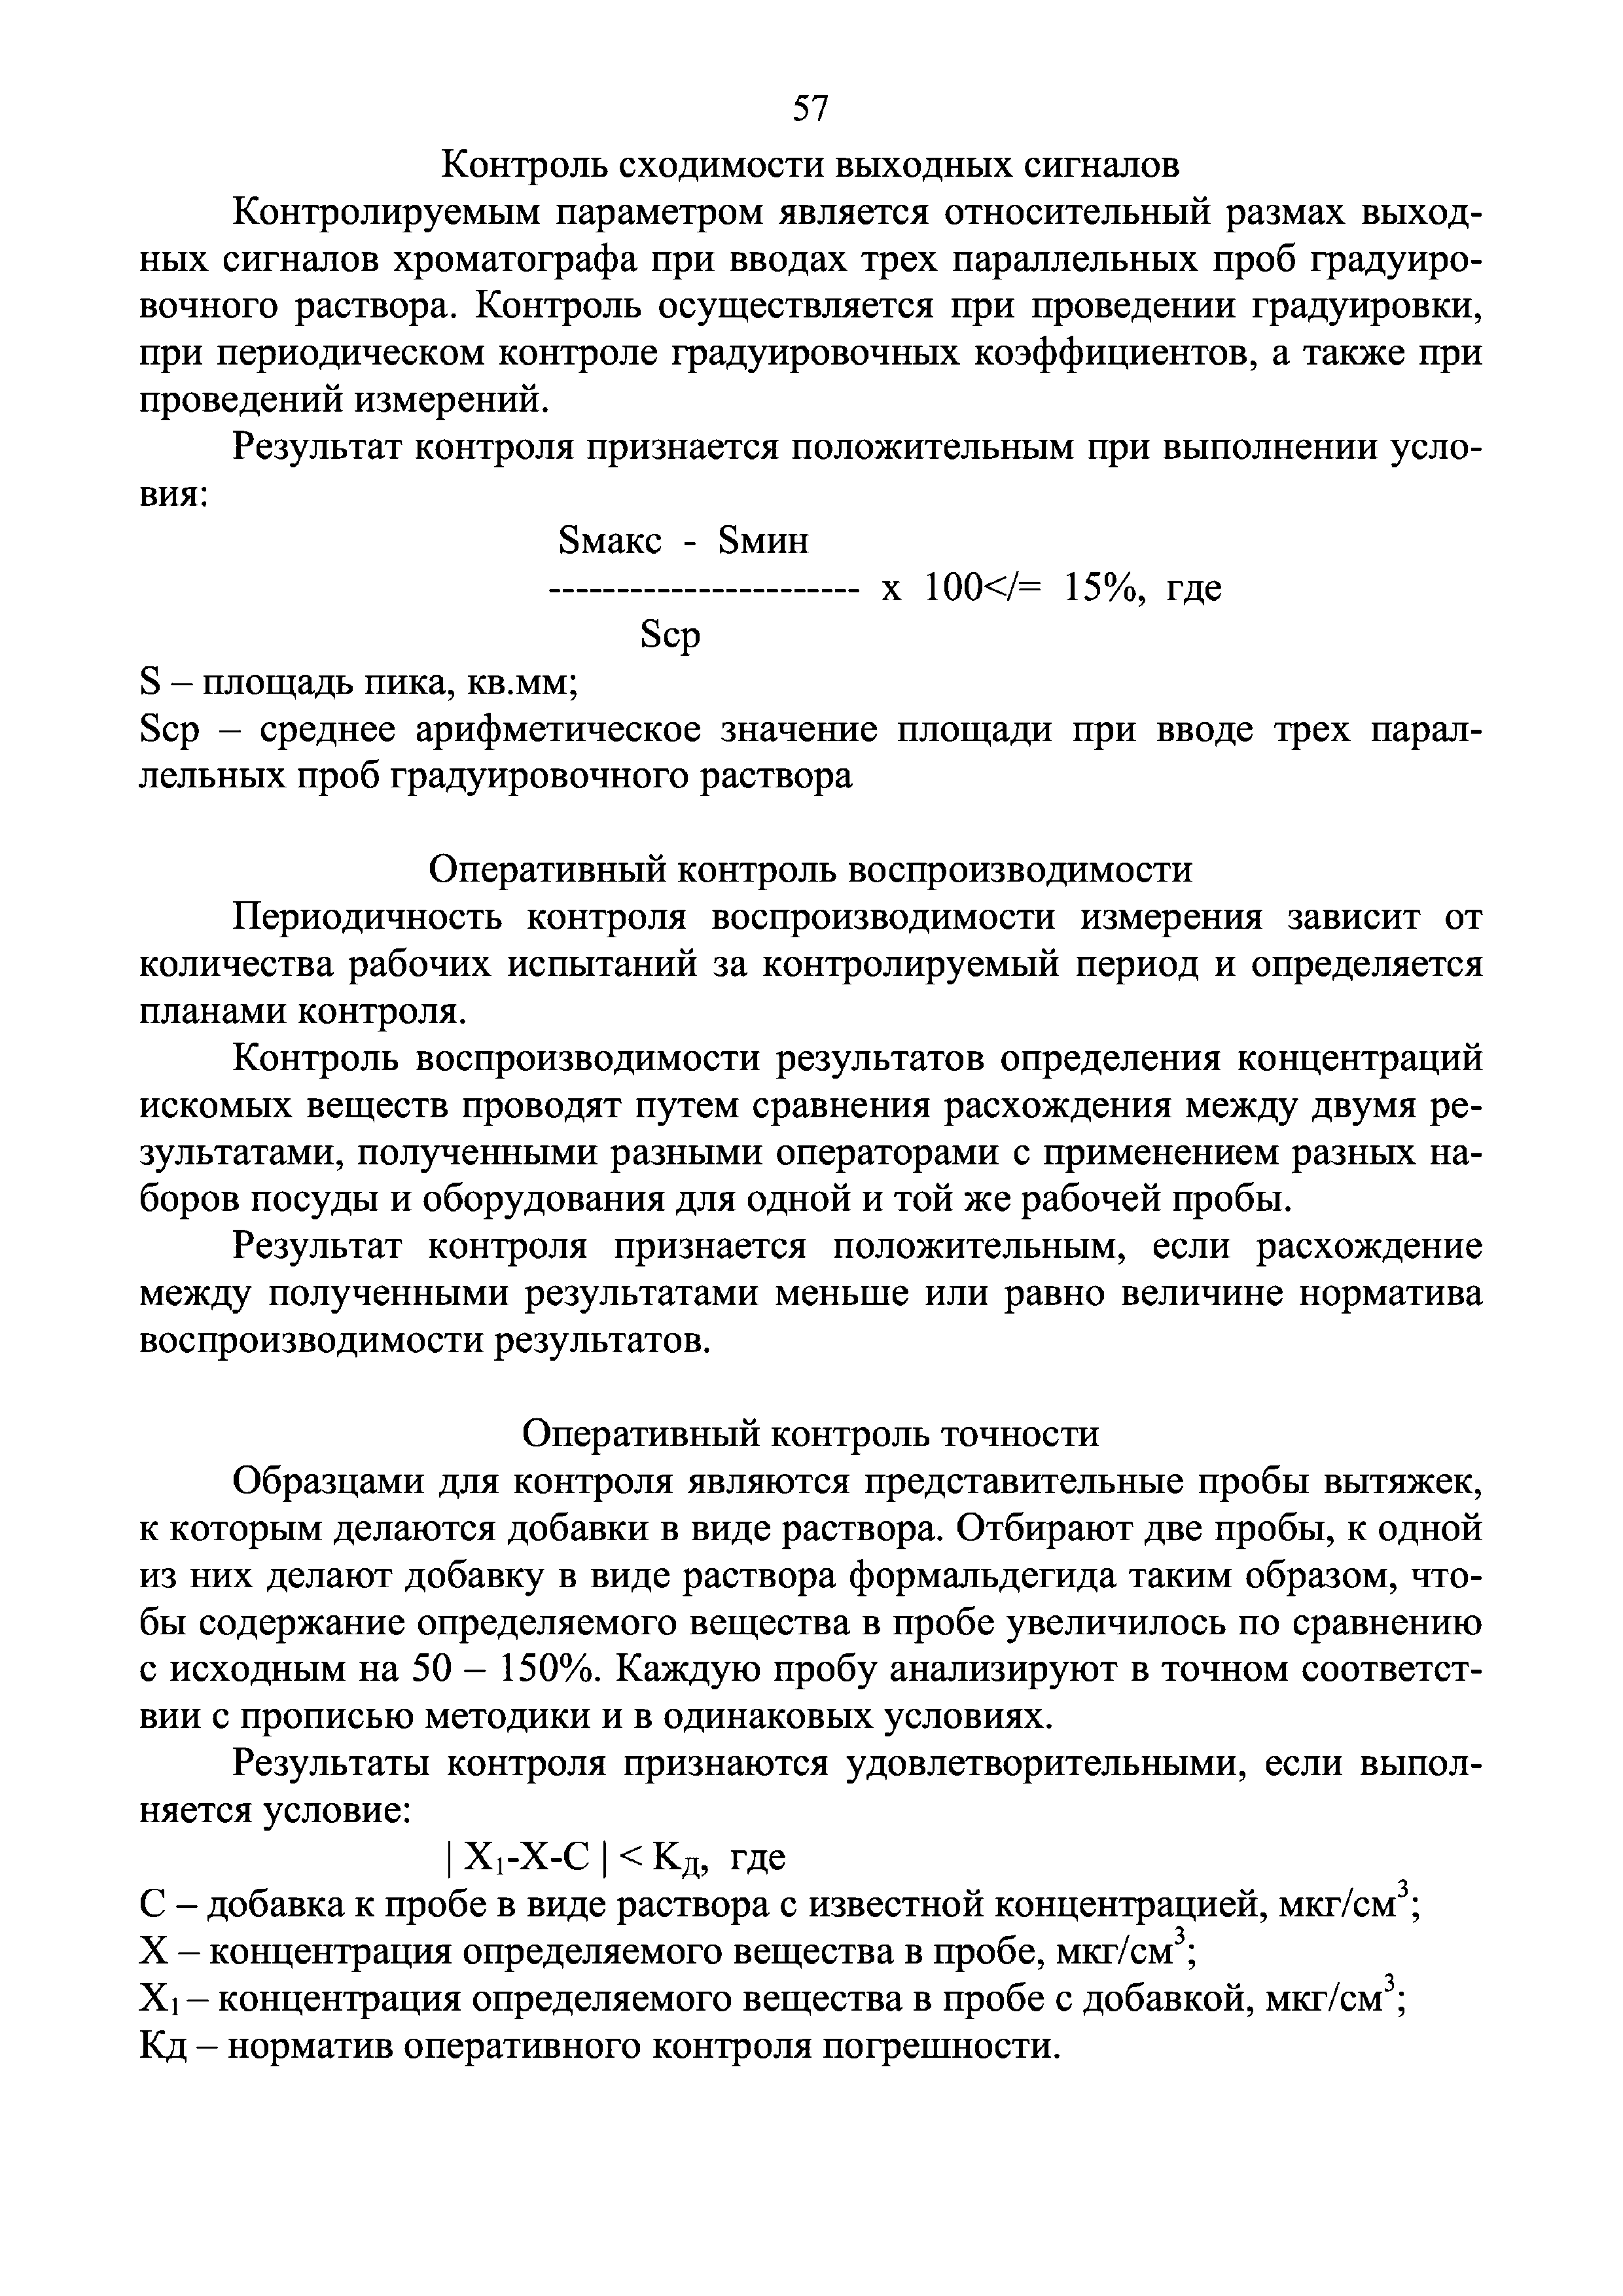 Инструкция 4.1.10-15-90-2005